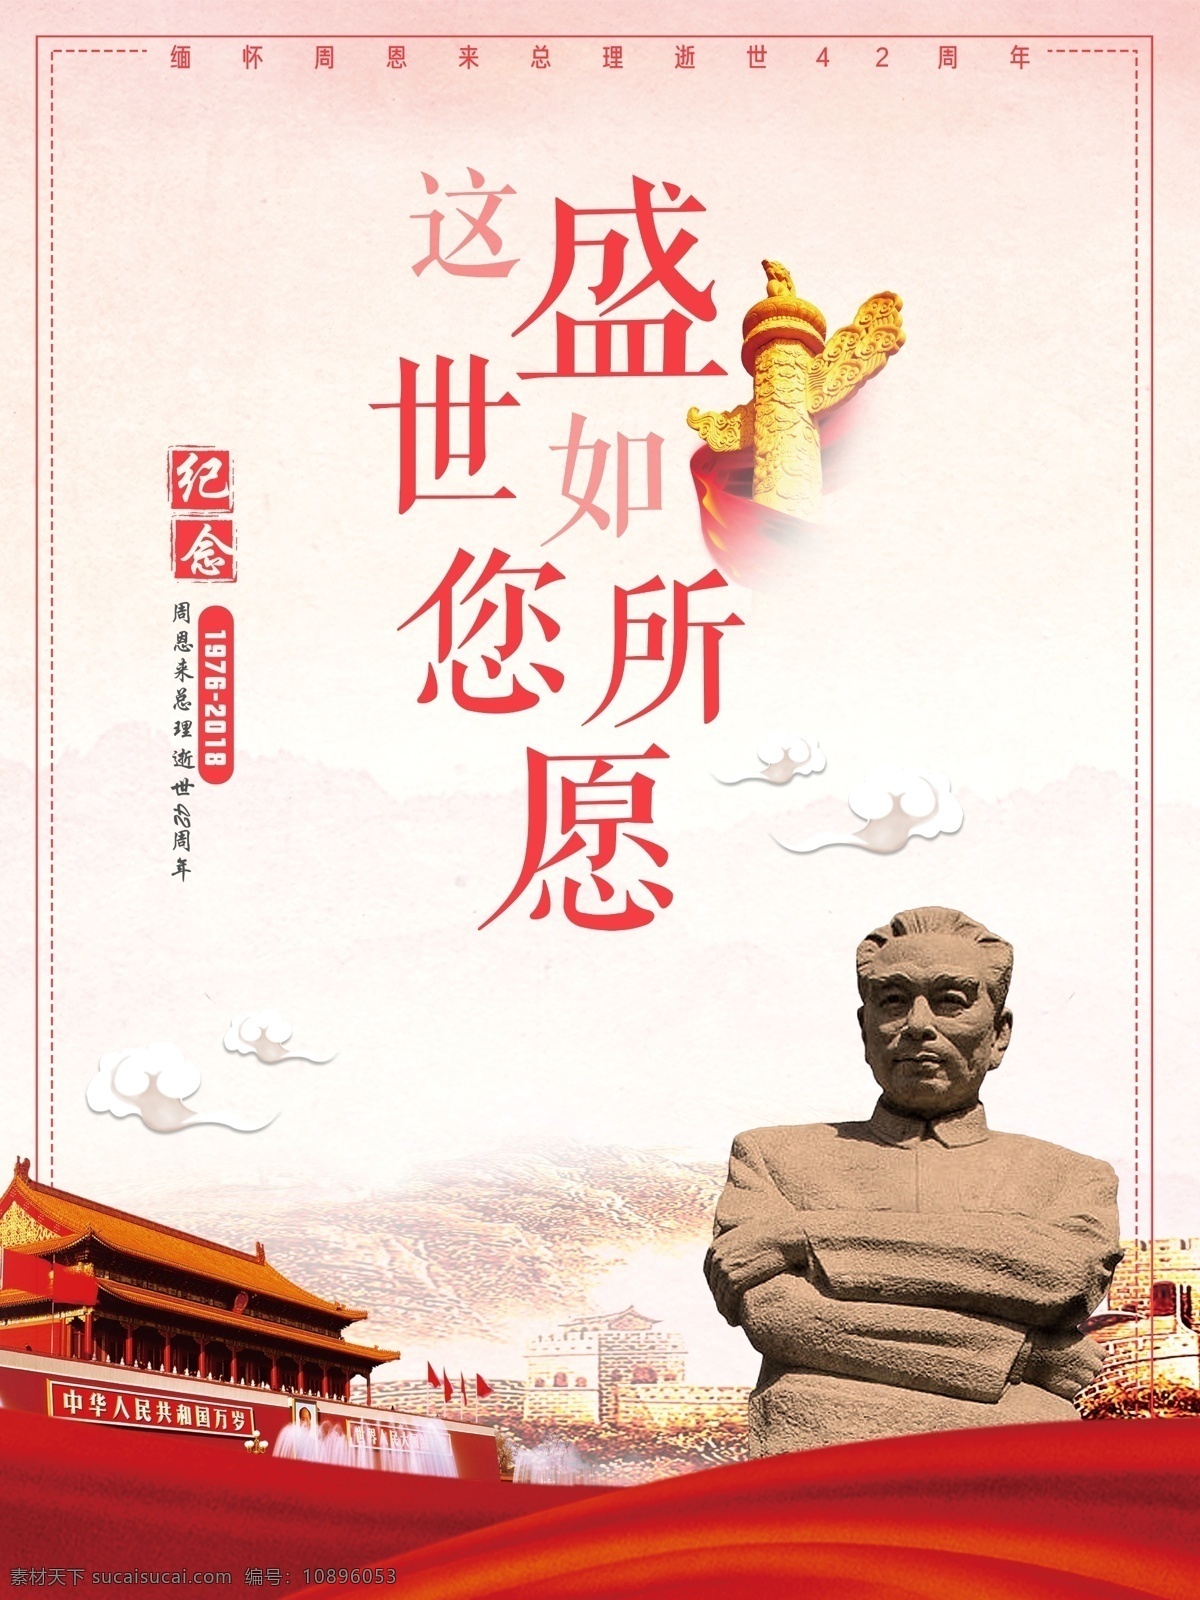 党建 周 总理 逝世 周年 海报 42周年 雕像 天安门 中国风 中国红 中华柱 周总理